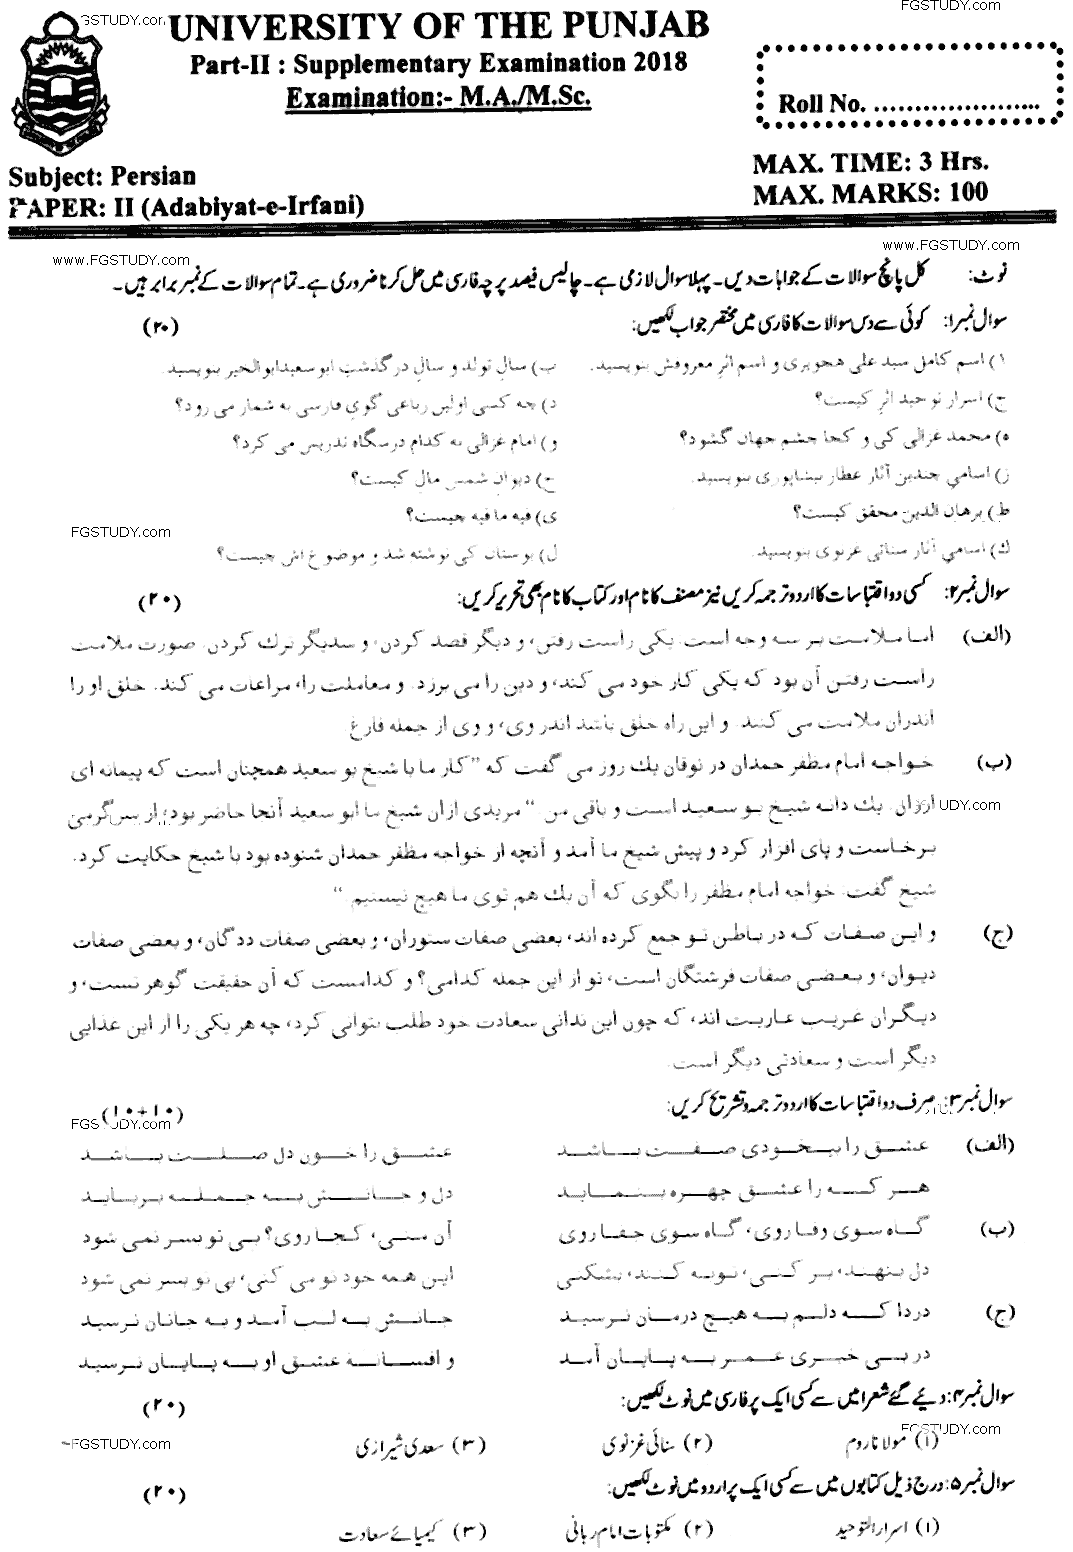 MA Part 2 Persian Adabiyat E Irfani Past Paper 2018 Punjab University